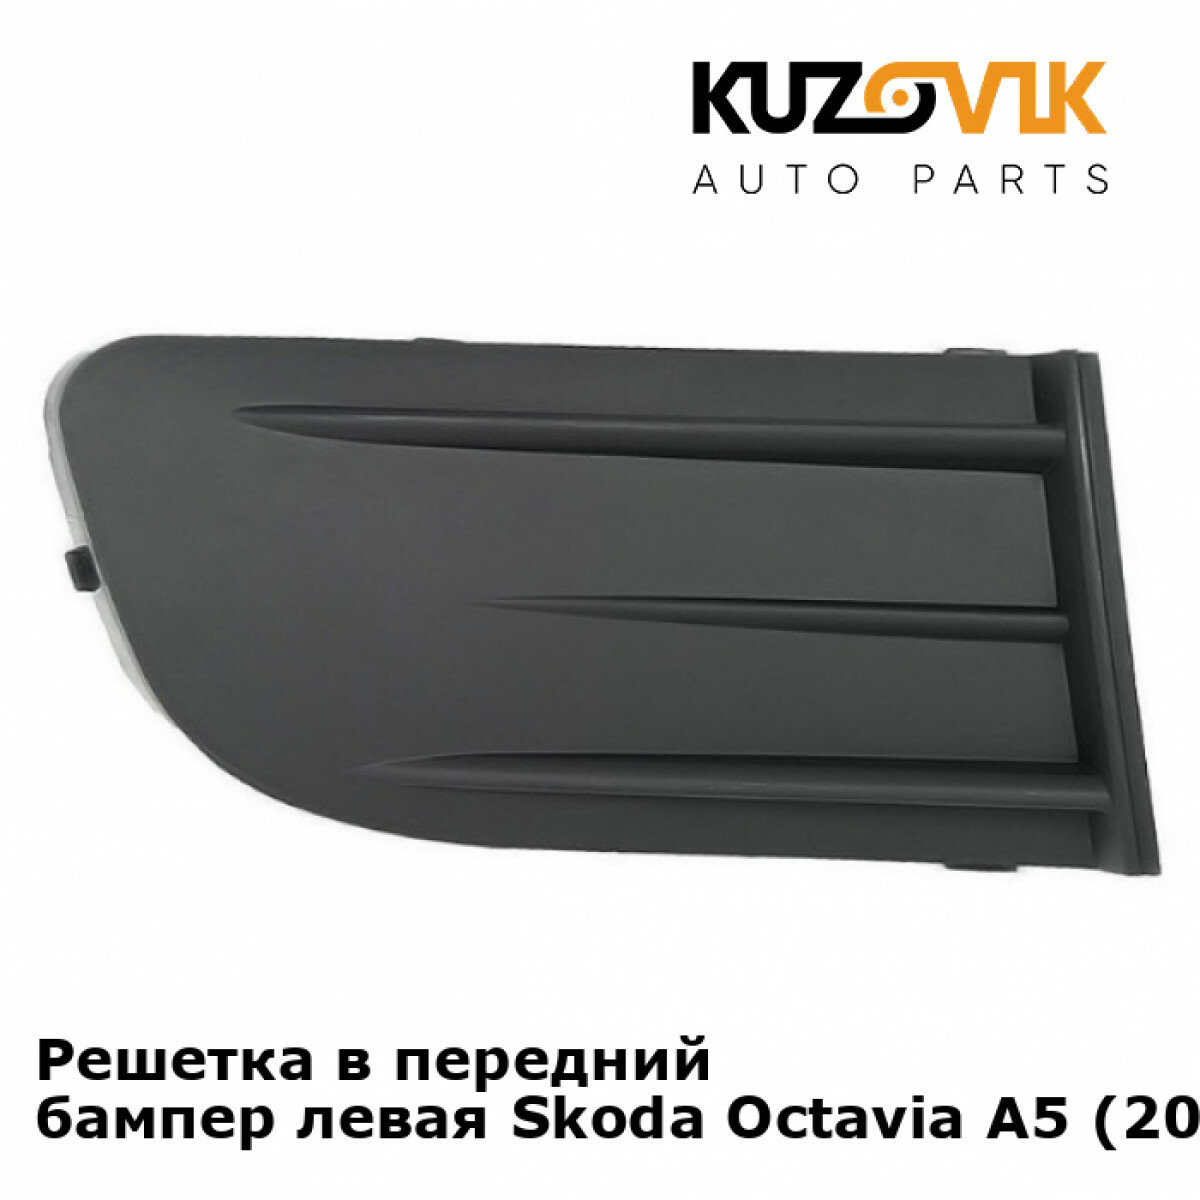 Решетка в передний бампер левая Skoda Octavia A5 (2004-2008)